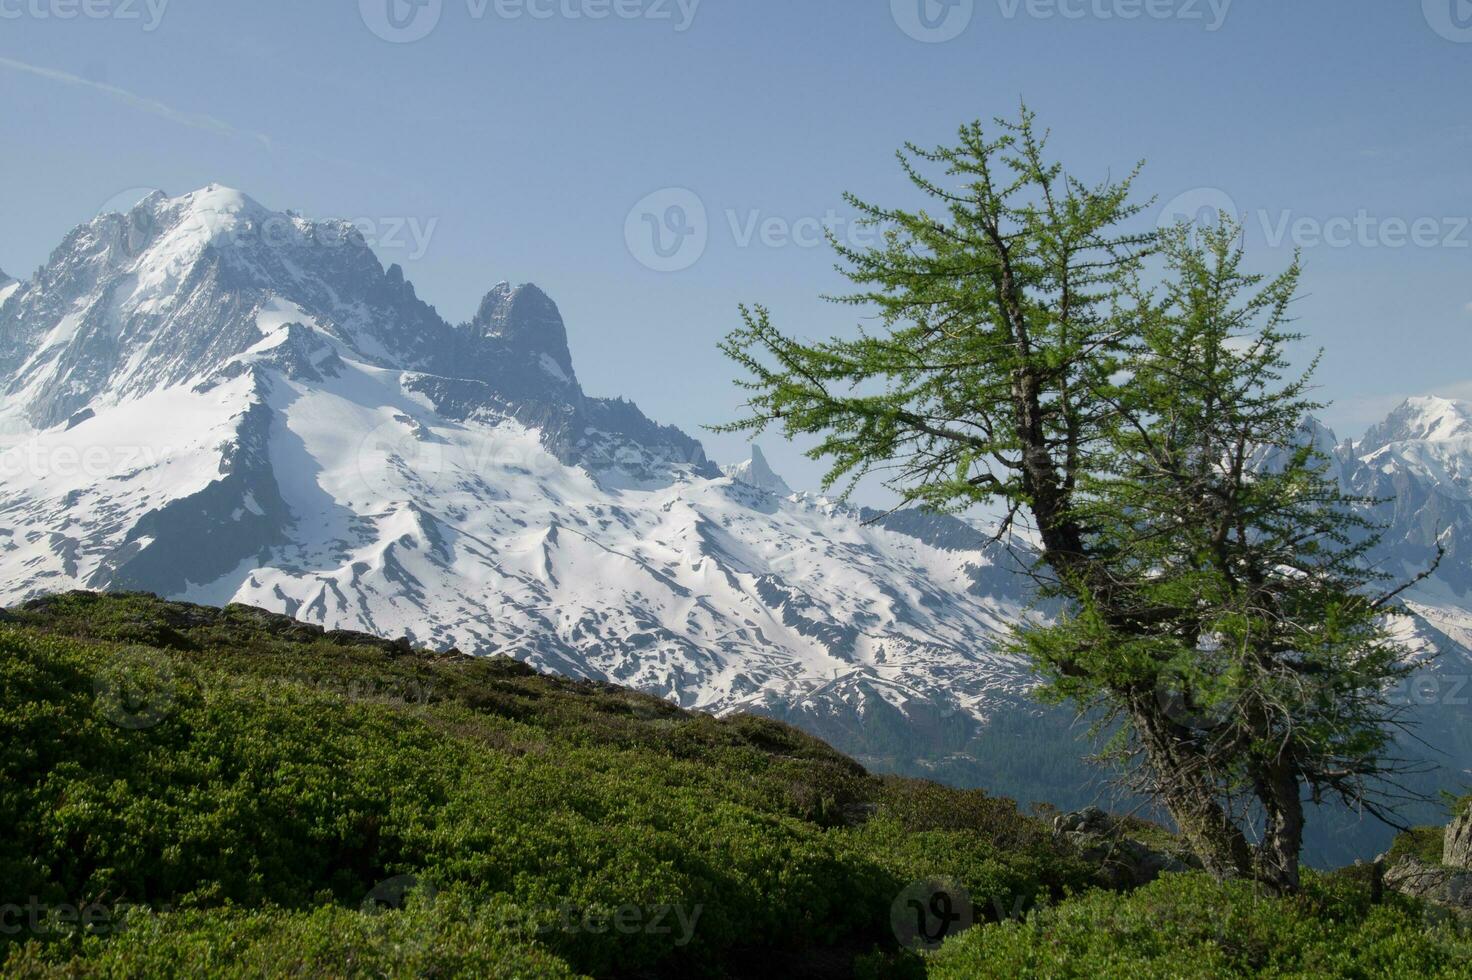 landskap av de franska alps foto